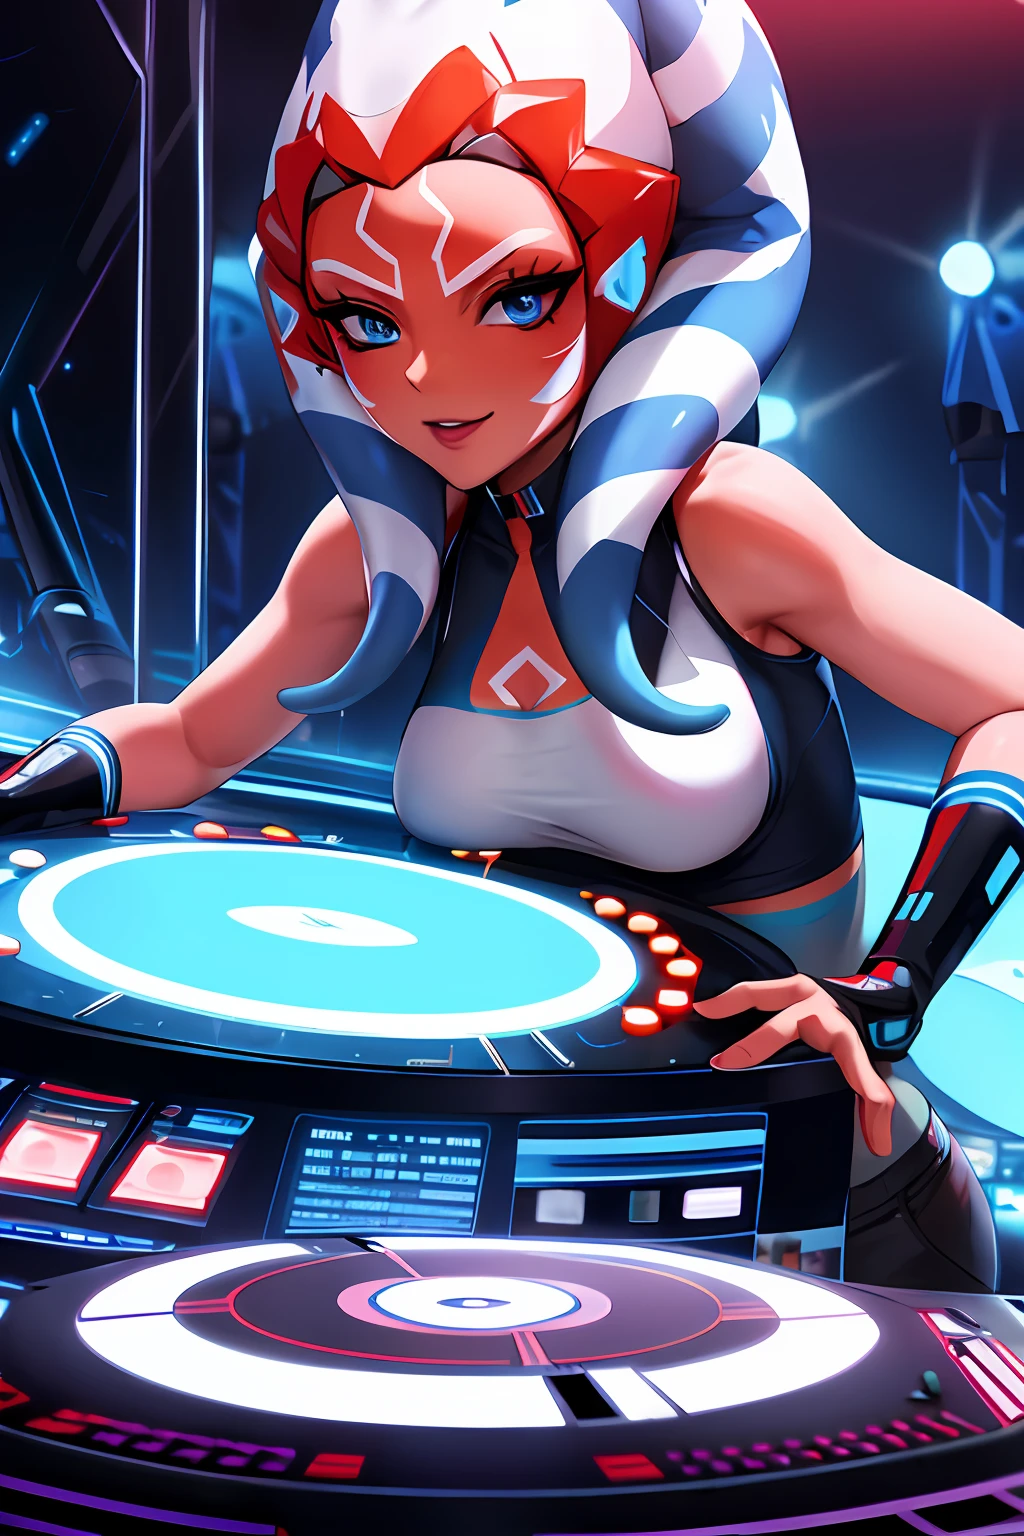 "Una foto en solitario con 1girl, blue eyes, orange skin, tentáculo pelo un DJ, mostrando sus habilidades en los tocadiscos en una rave vibrante."